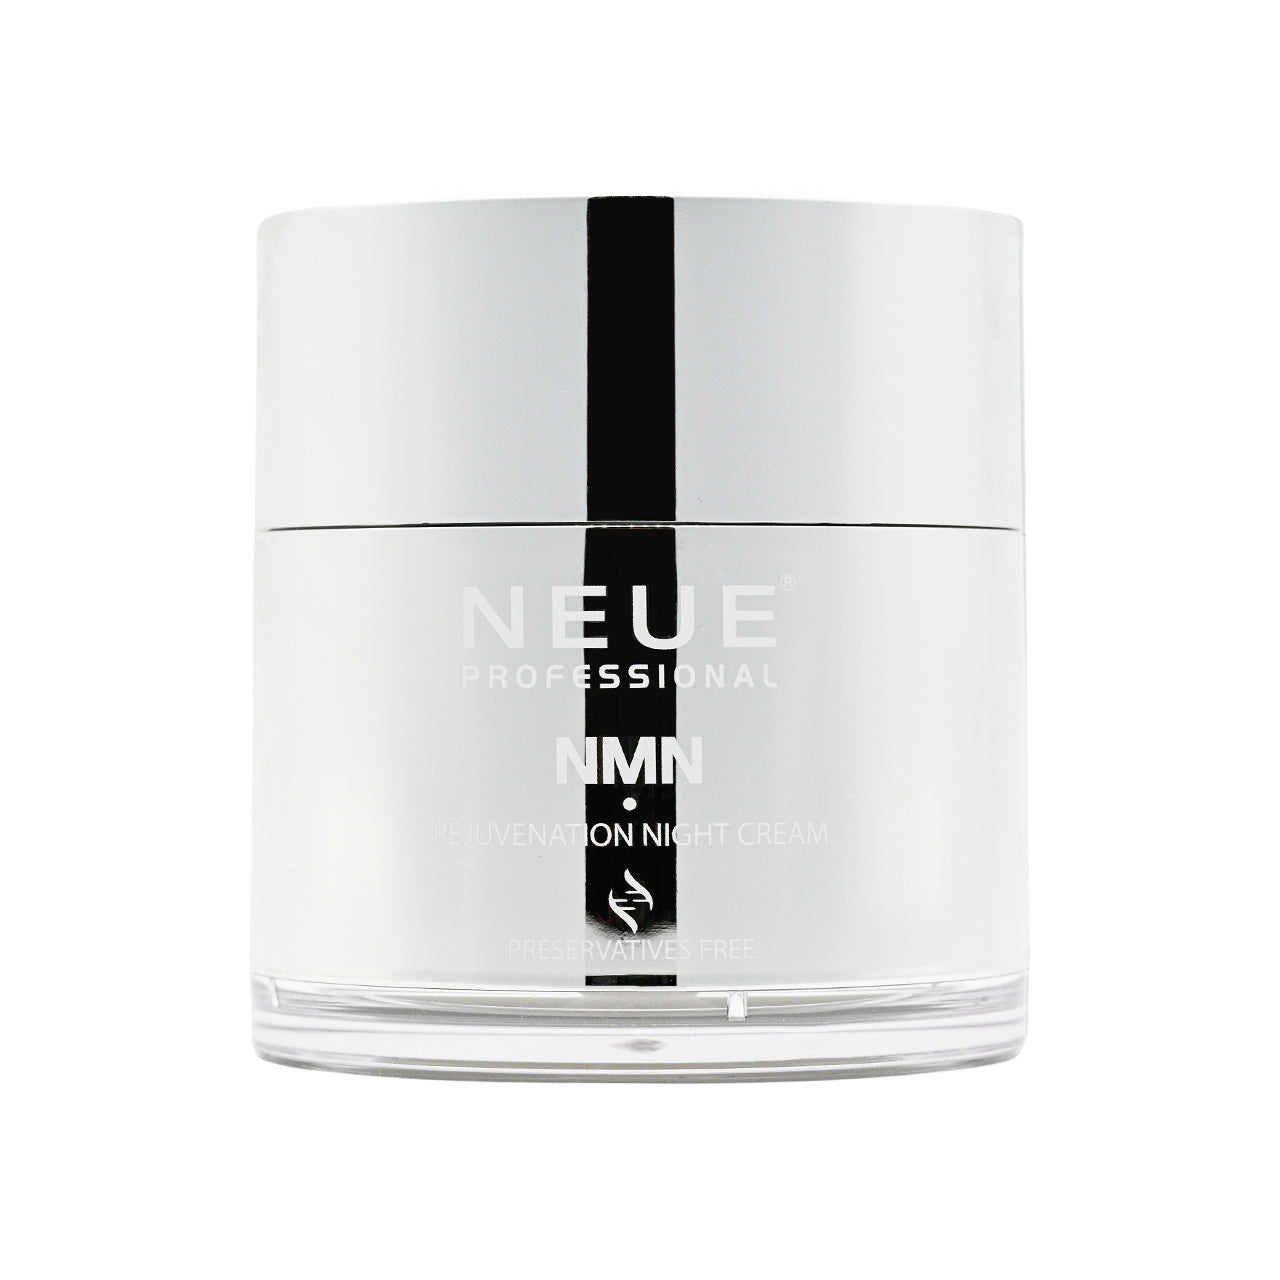 Neue NMN Rejuvenation Night Cream 50ml